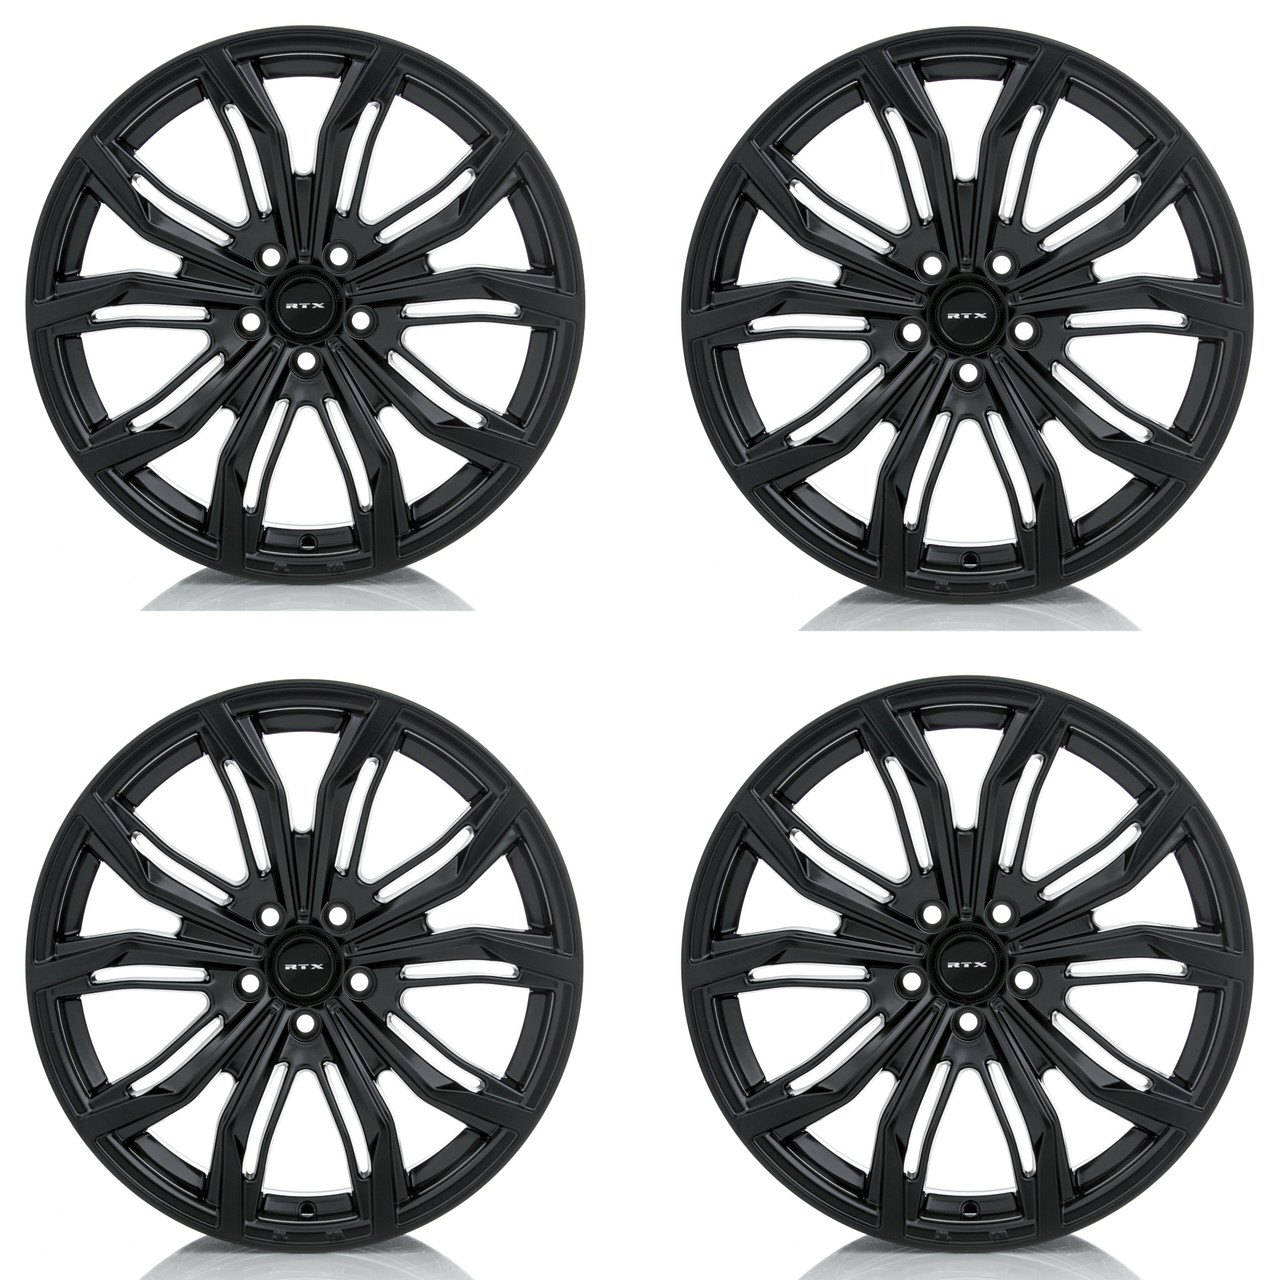 Set 4 18" RTX Black Widow Satin Black Wheels 18x8 5x112 42mm Rims